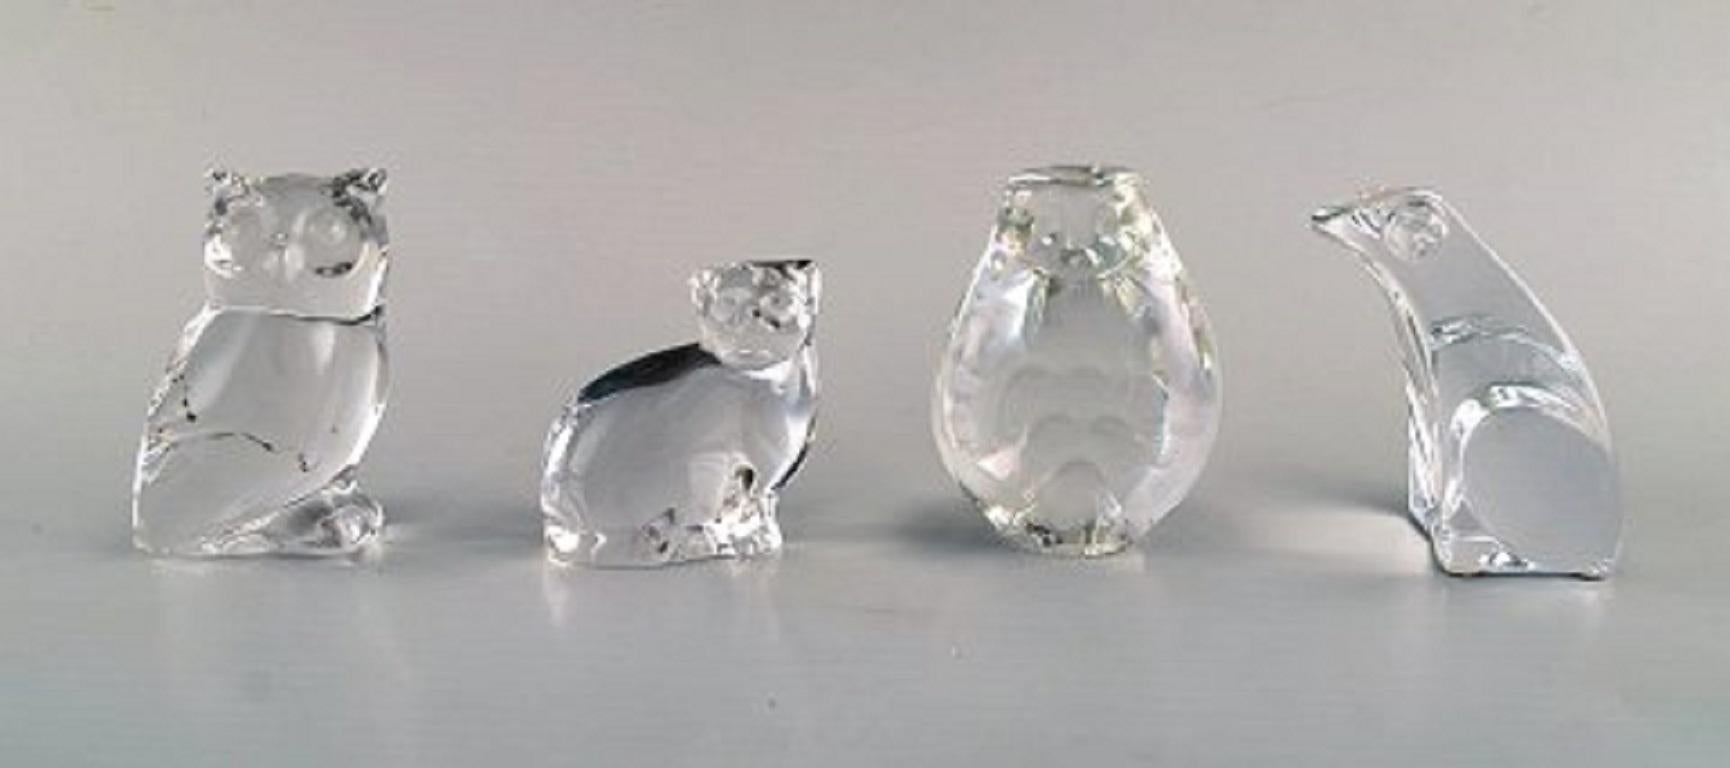 Des artistes verriers suédois et autres, dont Mats Jonasson. Neuf figures d'animaux en verre d'art transparent, années 1980.
Les plus grandes mesures : 17 x 8,5 cm.
En très bon état.
Certaines sont estampillées et avec un autocollant.